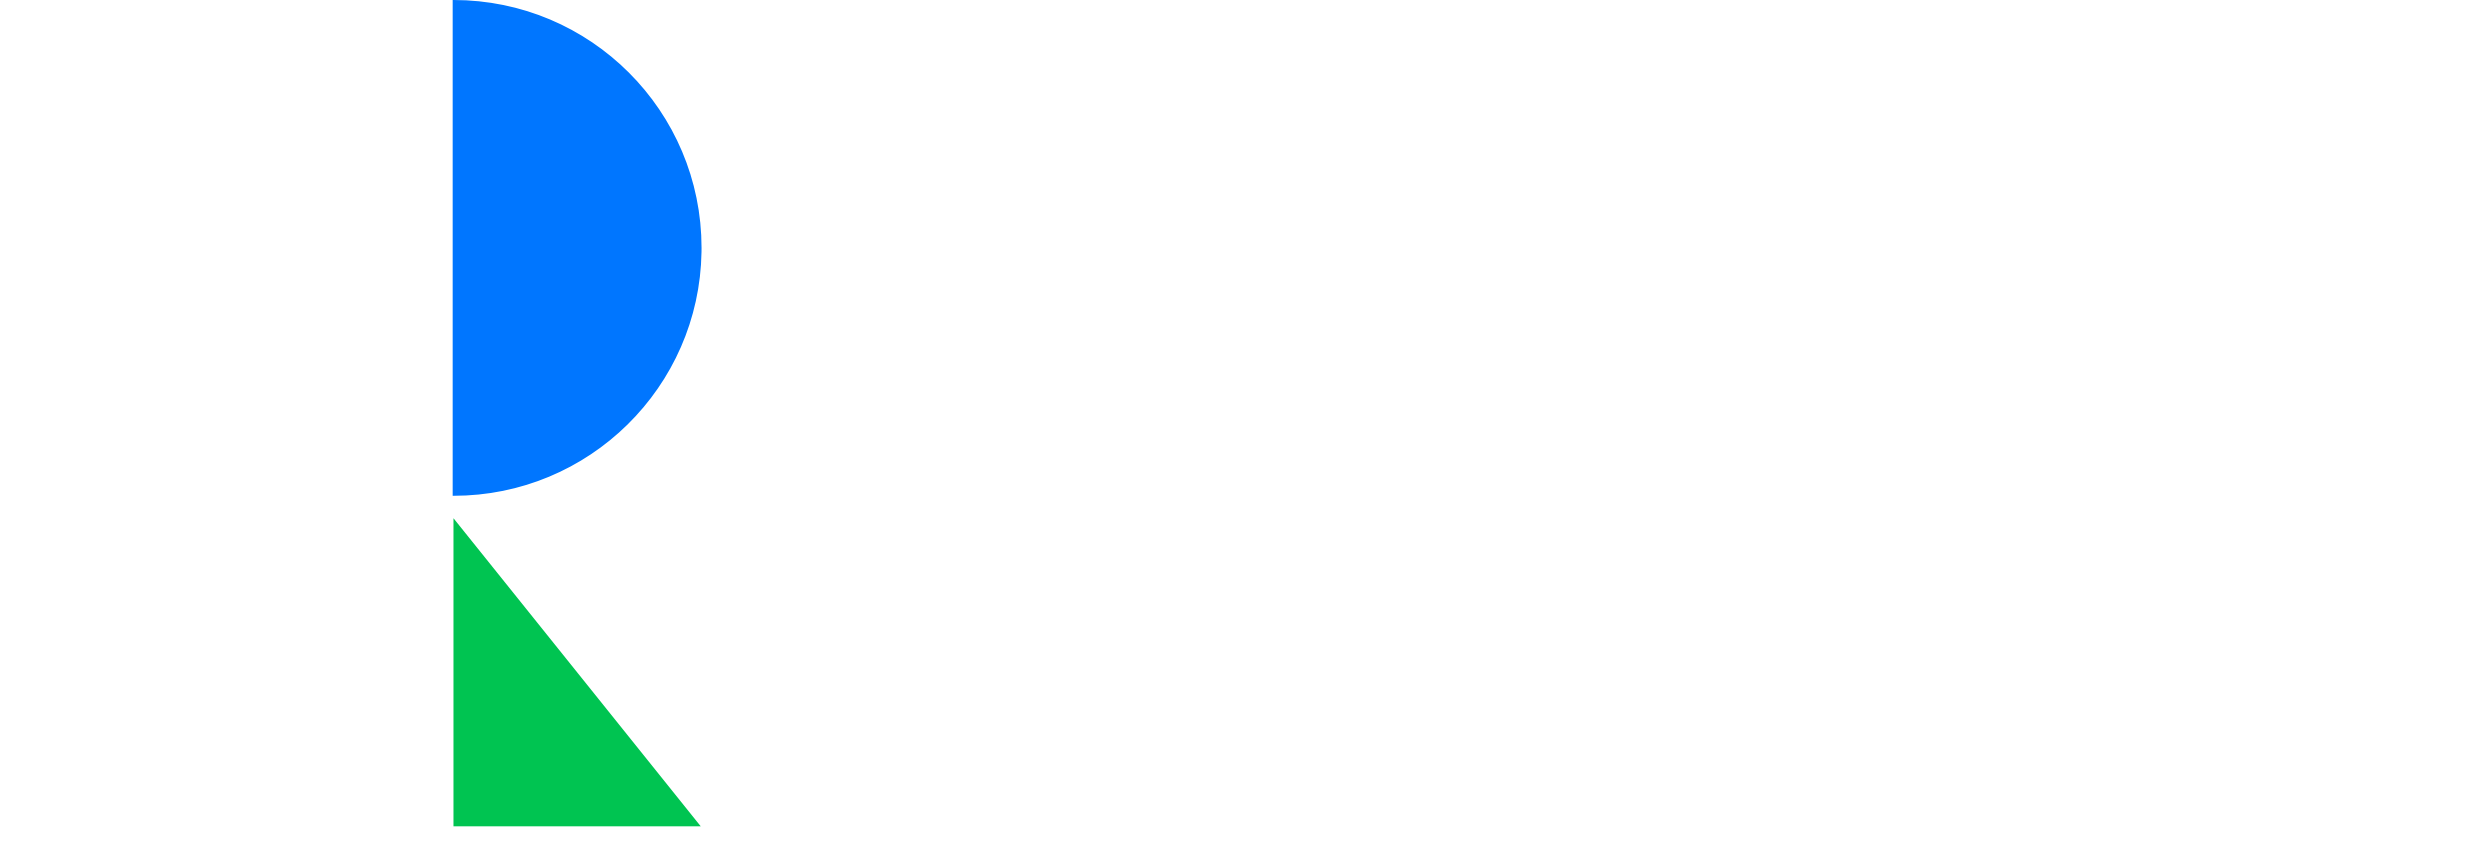 Claver Realty